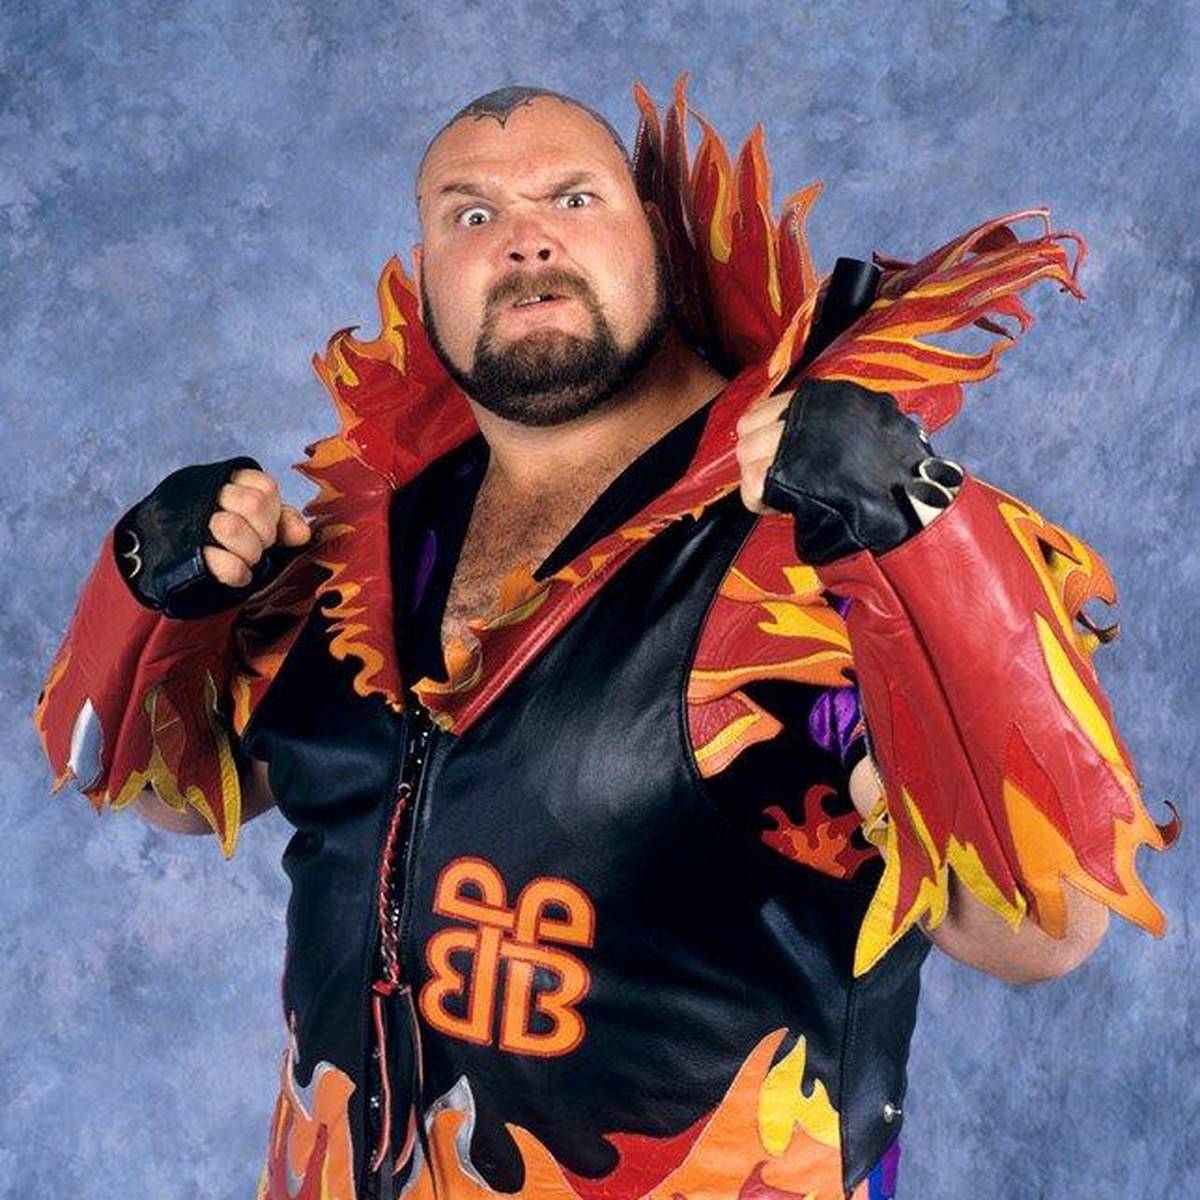 Der heute vor 15 Jahren verstorbene Bam Bam Bigelow stand 1995 im Hauptkampf der WWE-Megashow WrestleMania. Später fiel das „Beast from the East“ tief.